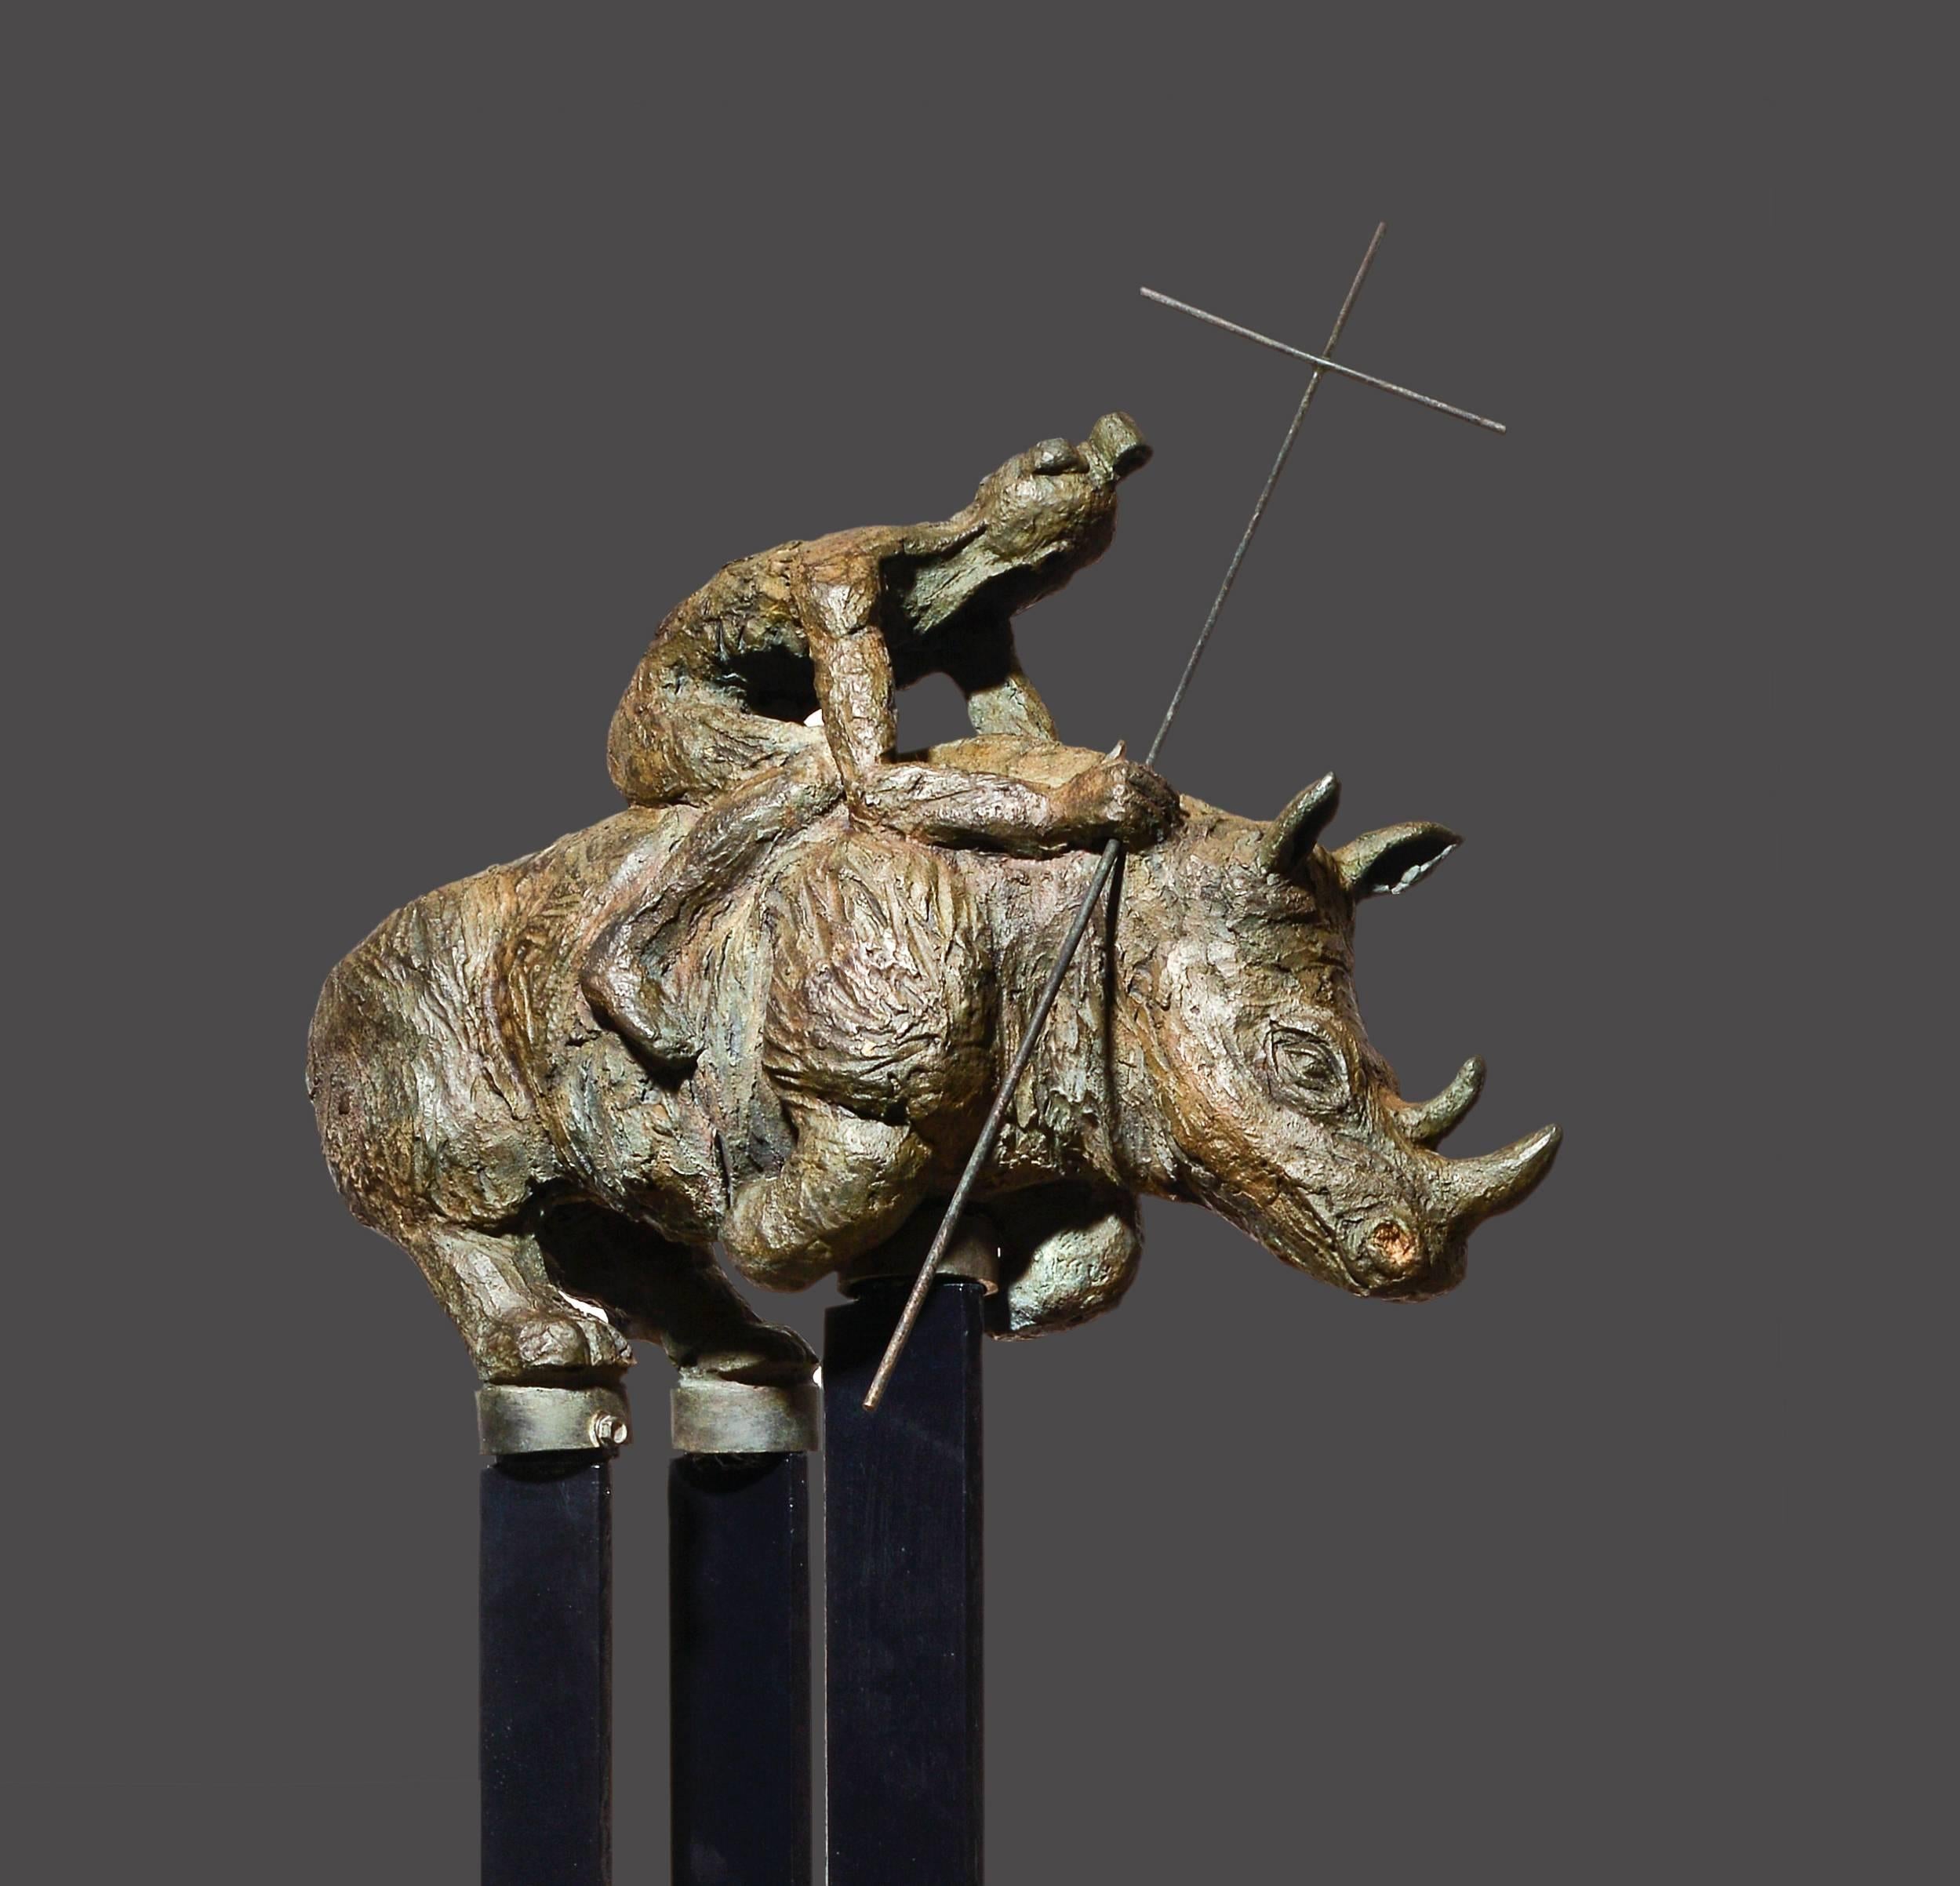 Mariko Figurative Sculpture – Samurai III.